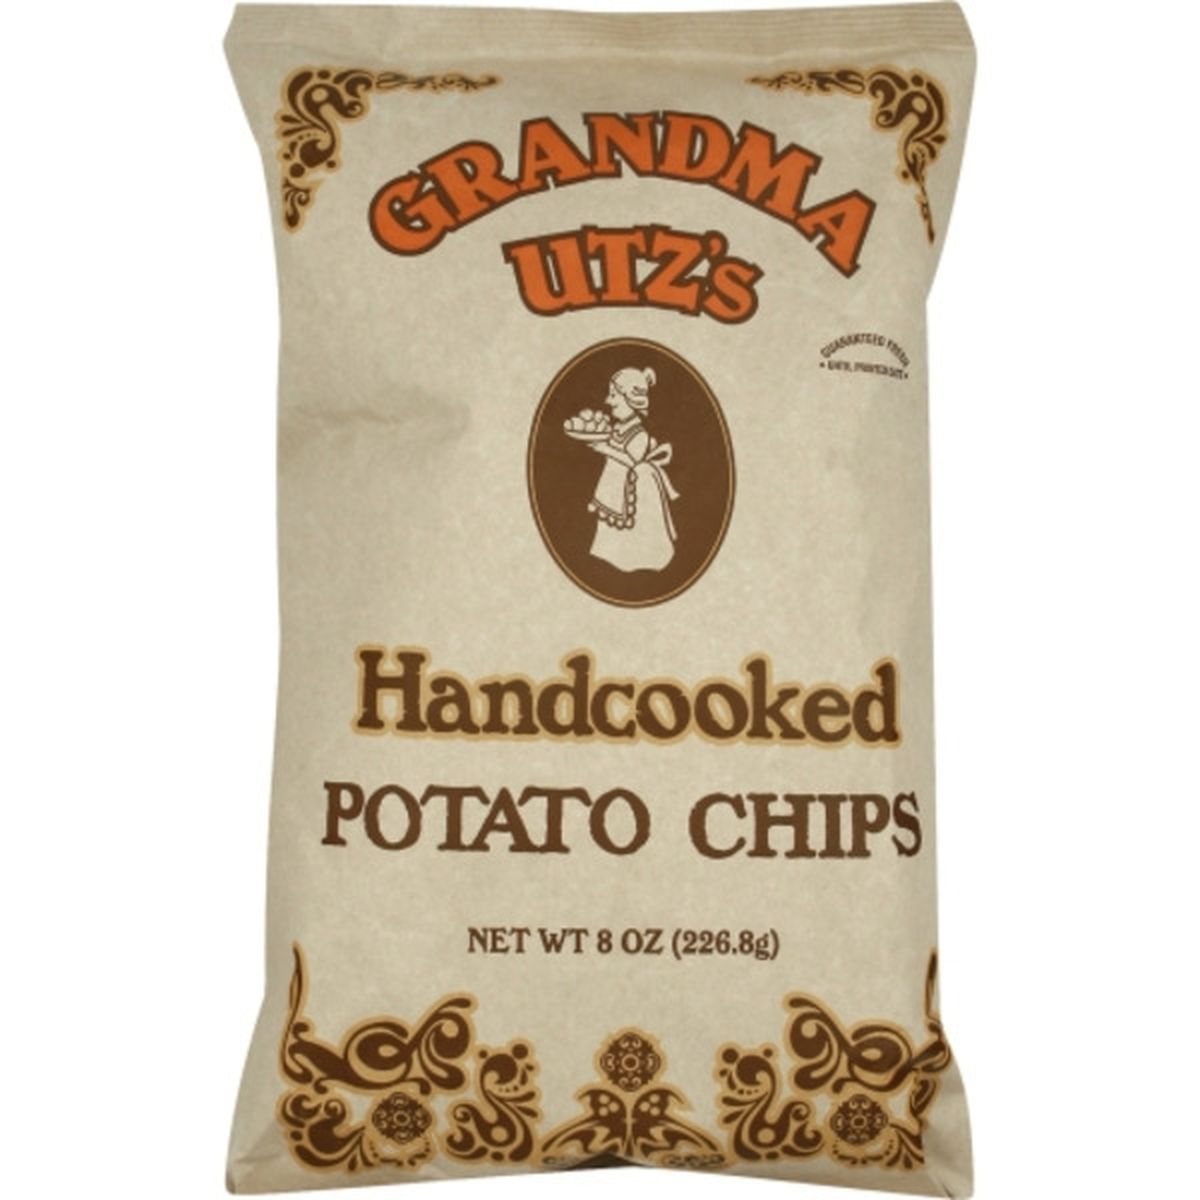 Calories in Grandma Utz's Potato Chips, Handcooked